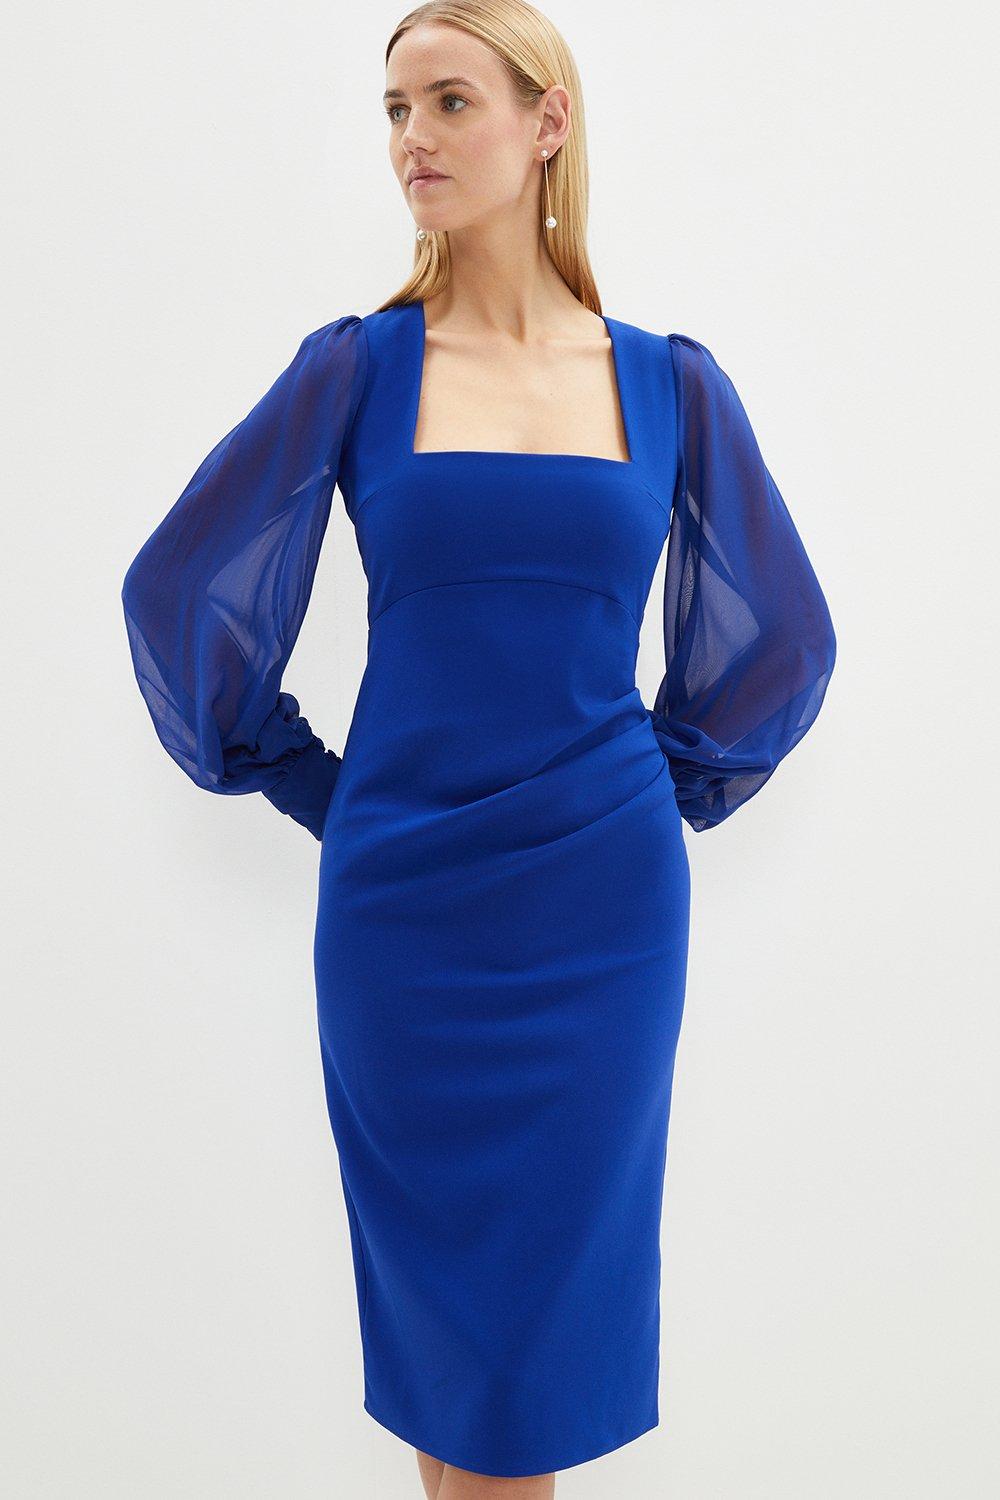 Square Neck Woven Sleeve Bodysculpt Crepe Pencil Dress - Blue